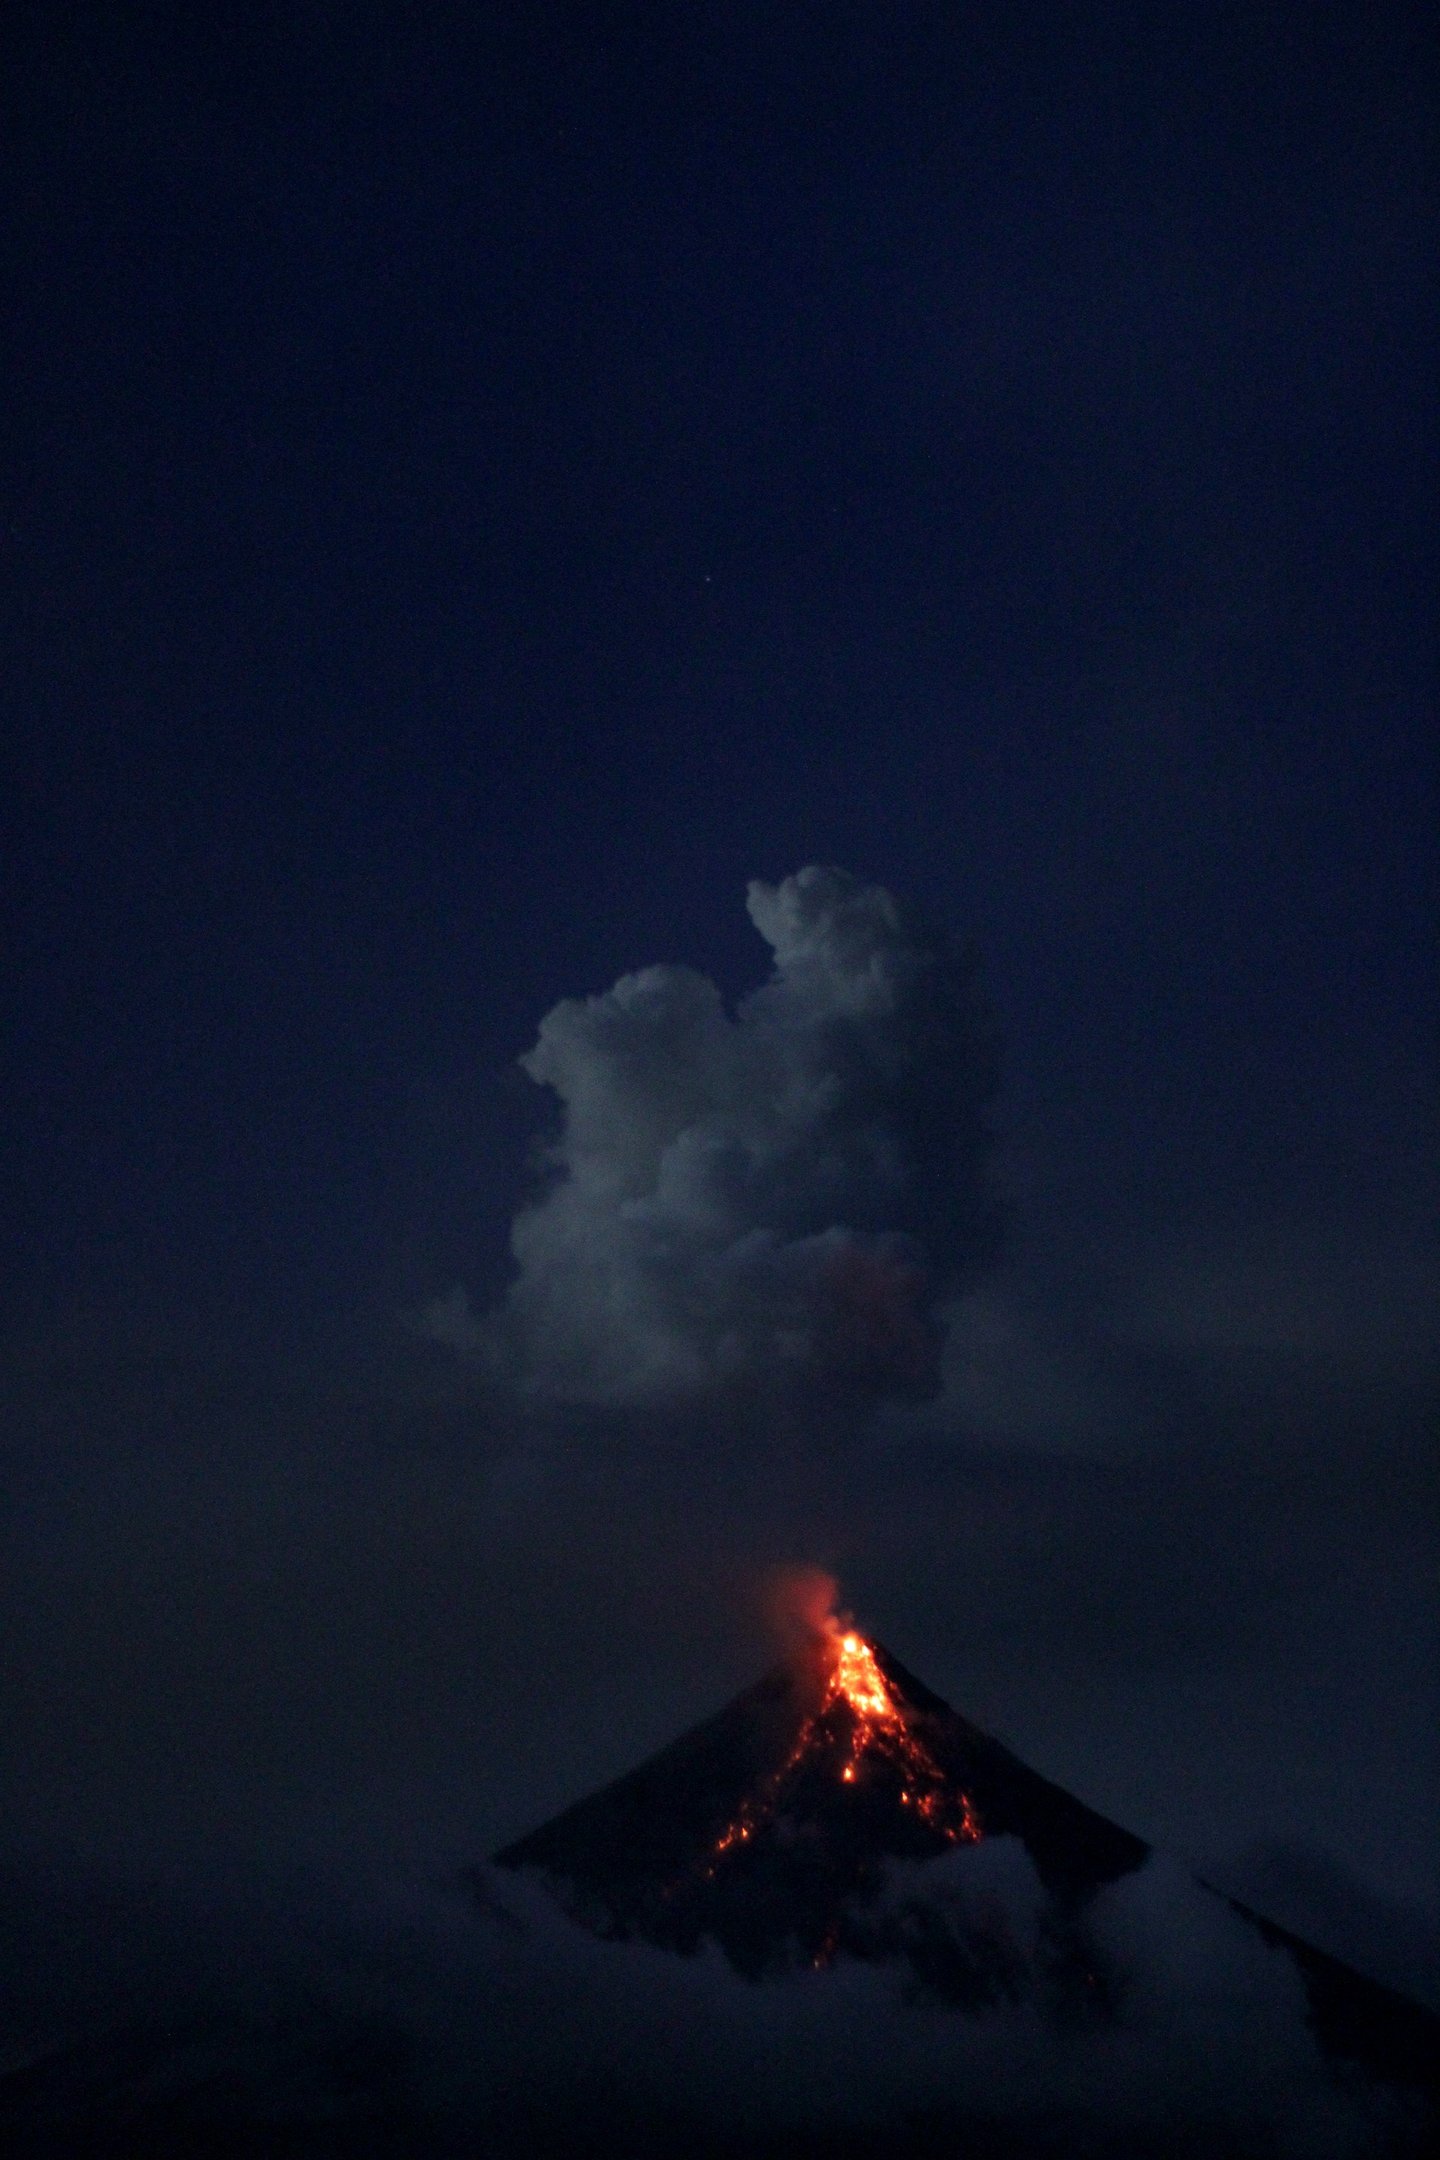 Geoengenharia se inspira no efeito de erupções vulcânicas sobre o planeta.